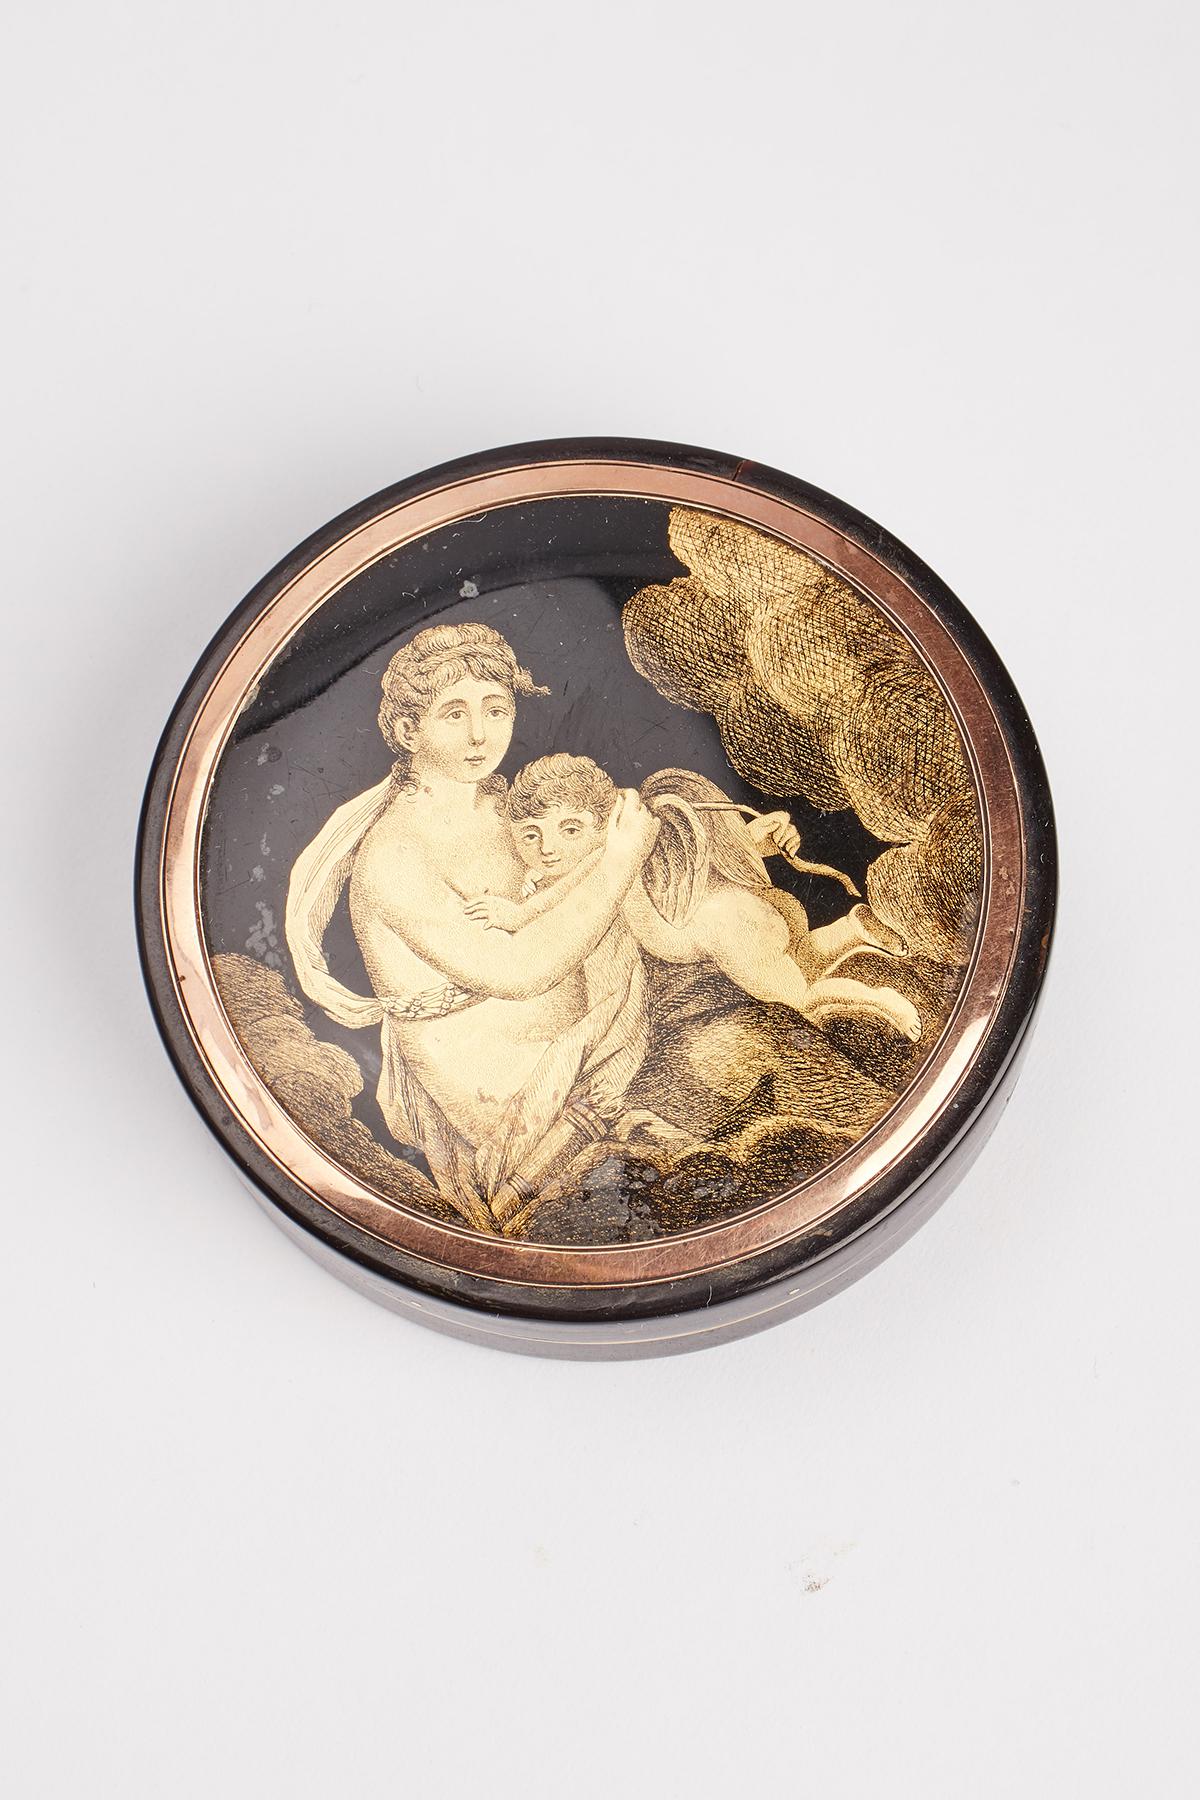 Runde Schnupftabakdose aus 18 K. Gold und Schildpatt mit einer Miniatur in Gold-Fixé-Technik, die Venus und Amor darstellt. Frankreich, 1809. (VERSAND NUR IN DIE EU)